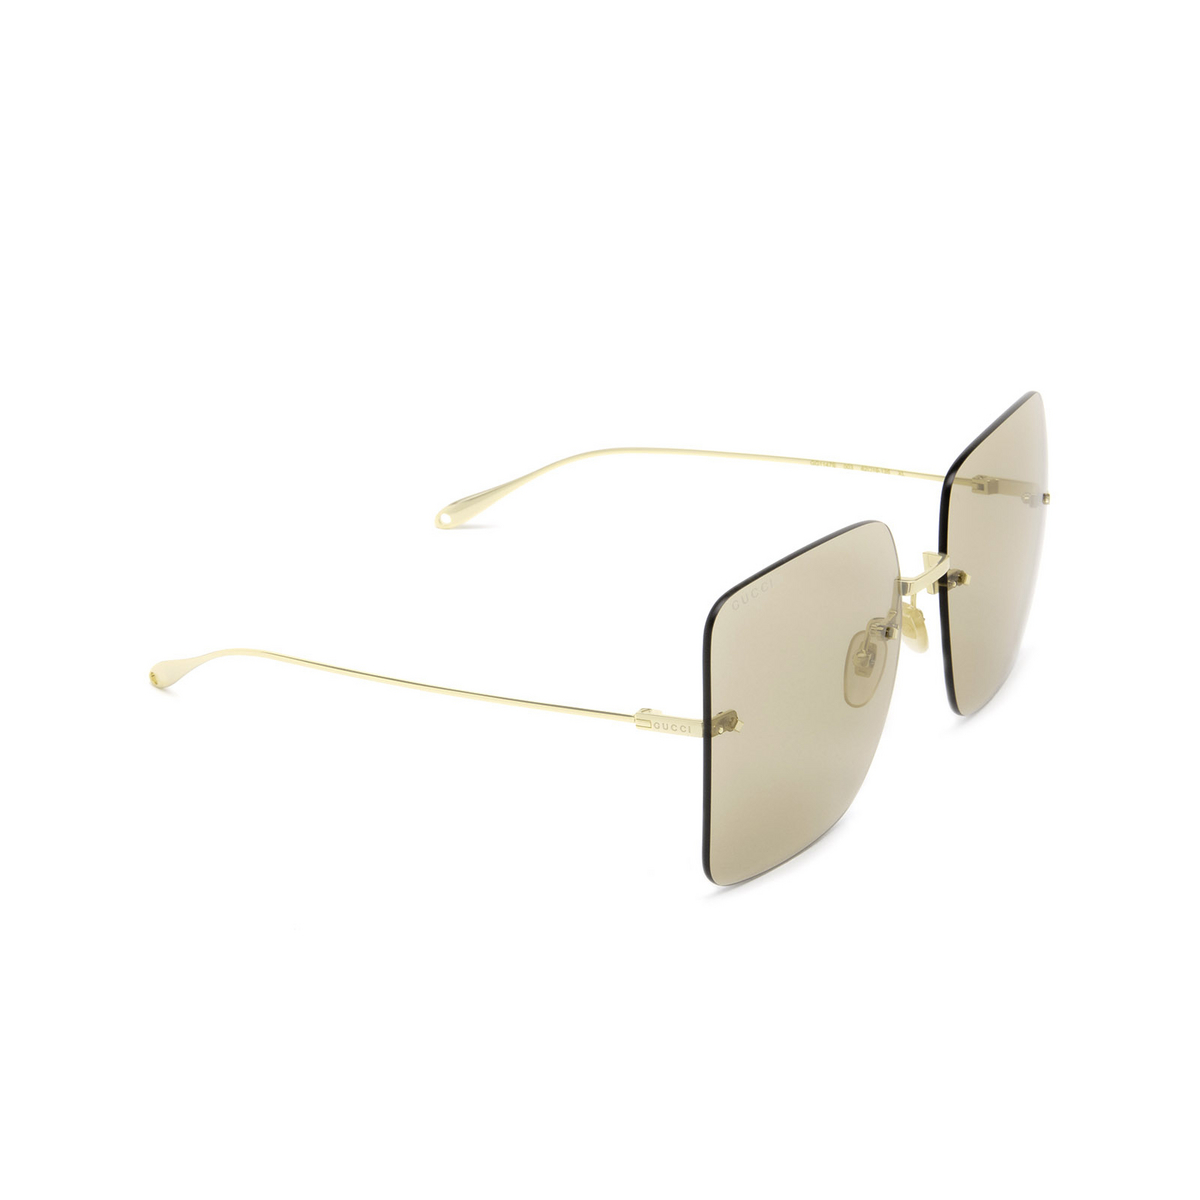 Gucci® Square Sunglasses: GG1147S color Gold 003 - three-quarters view.